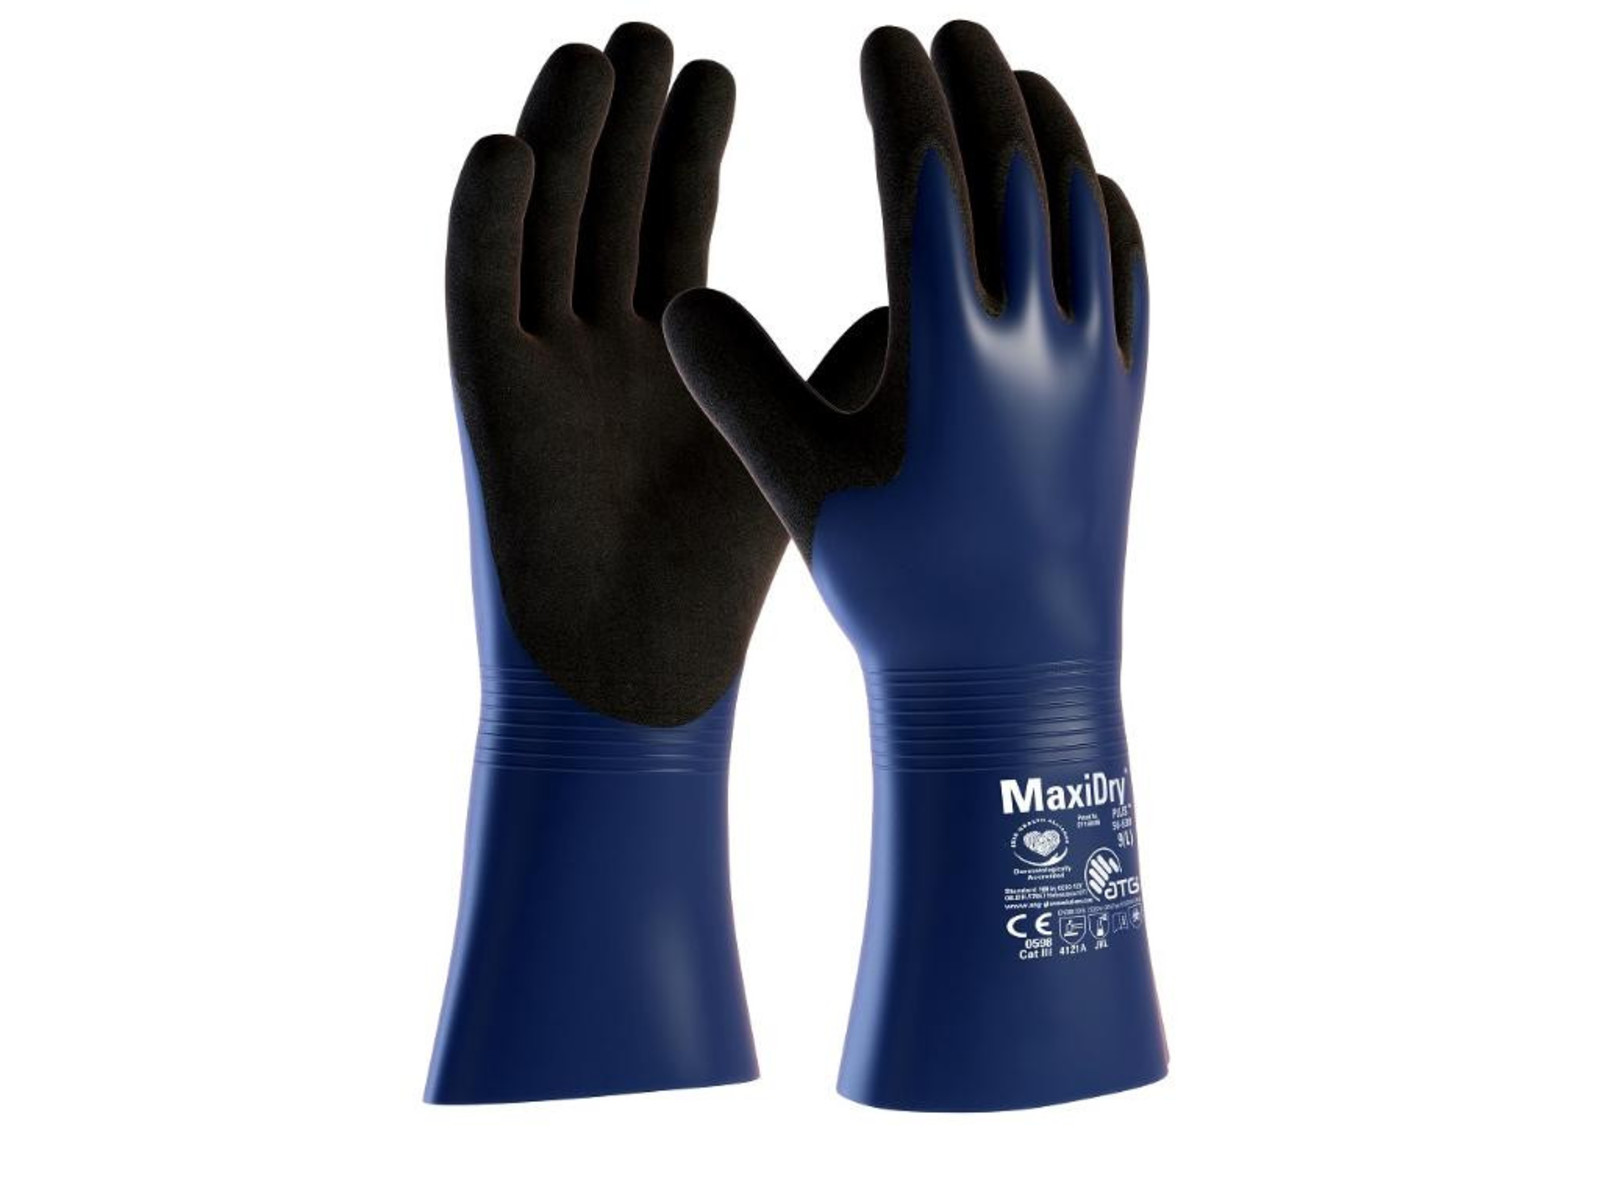 Protichemické rukavice ATG MaxiDry Plus 56-530 - veľkosť: 8/M, farba: modrá